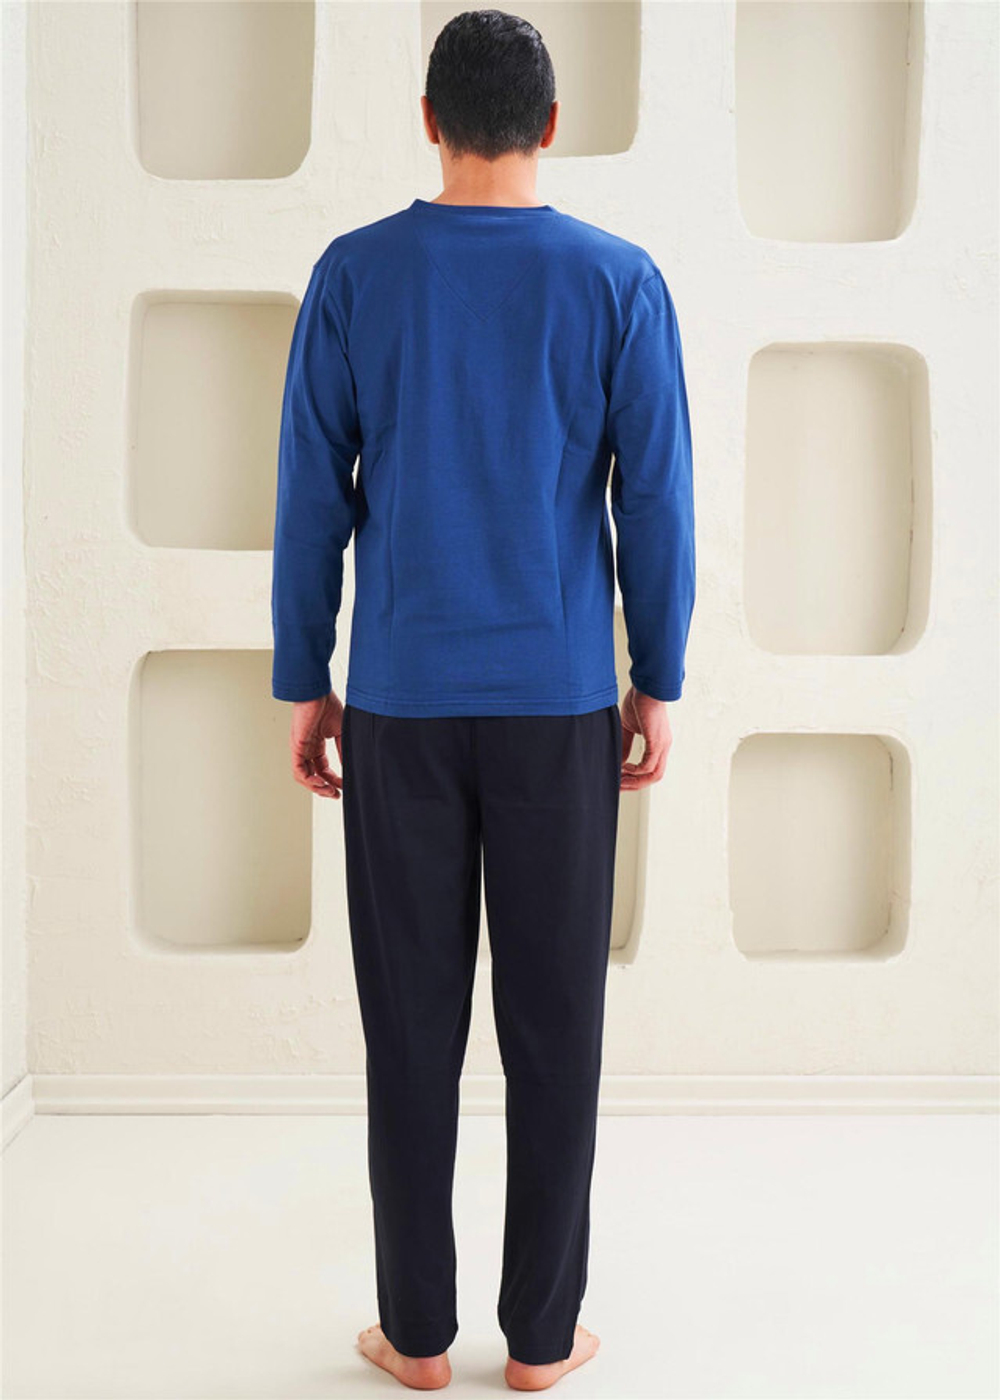 Мужская 2-х предметная пижама - Спортивный стиль с длинными рукавами - 10808